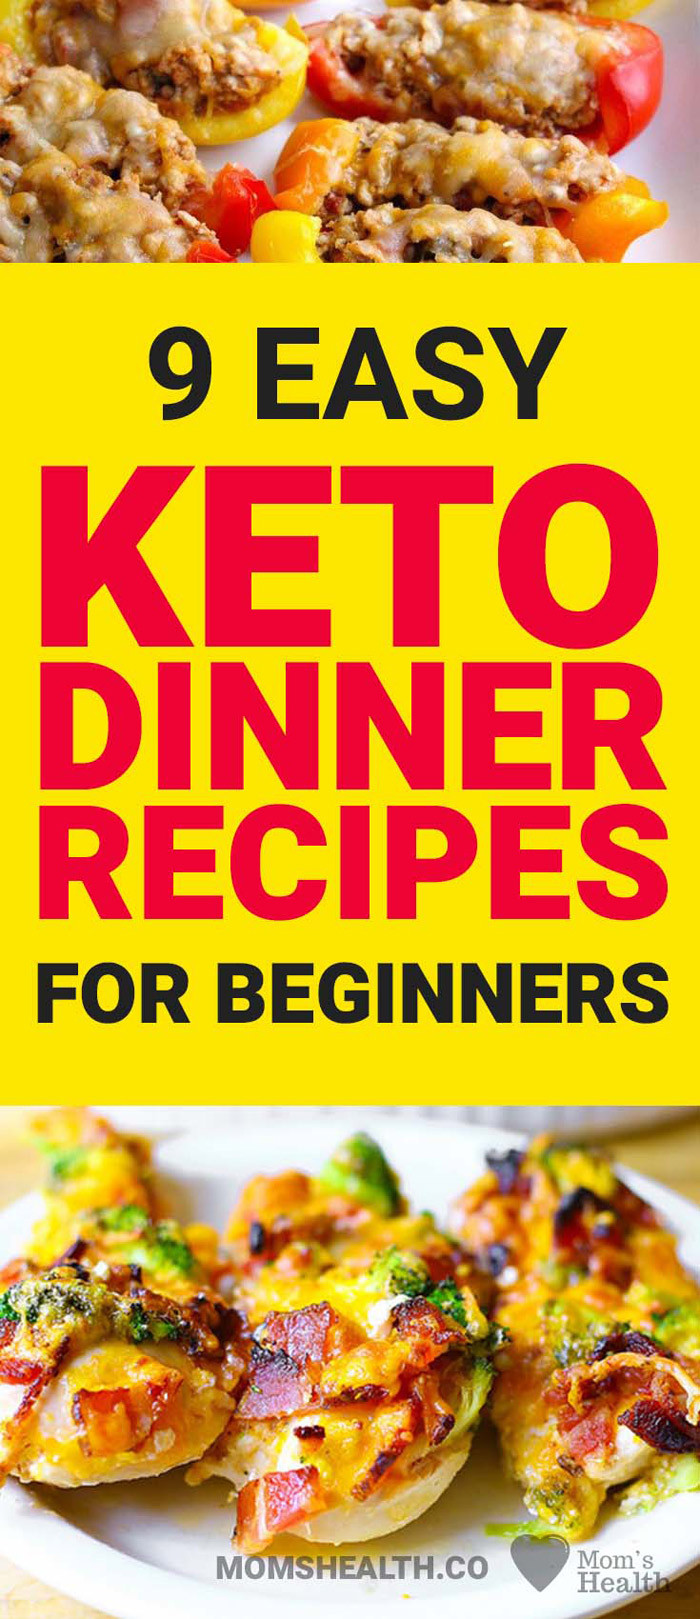 Keto Diet For Beginners Recipe Dinner
 Keto Dinner Recipes – 9 Easy Keto Dinners for Beginners